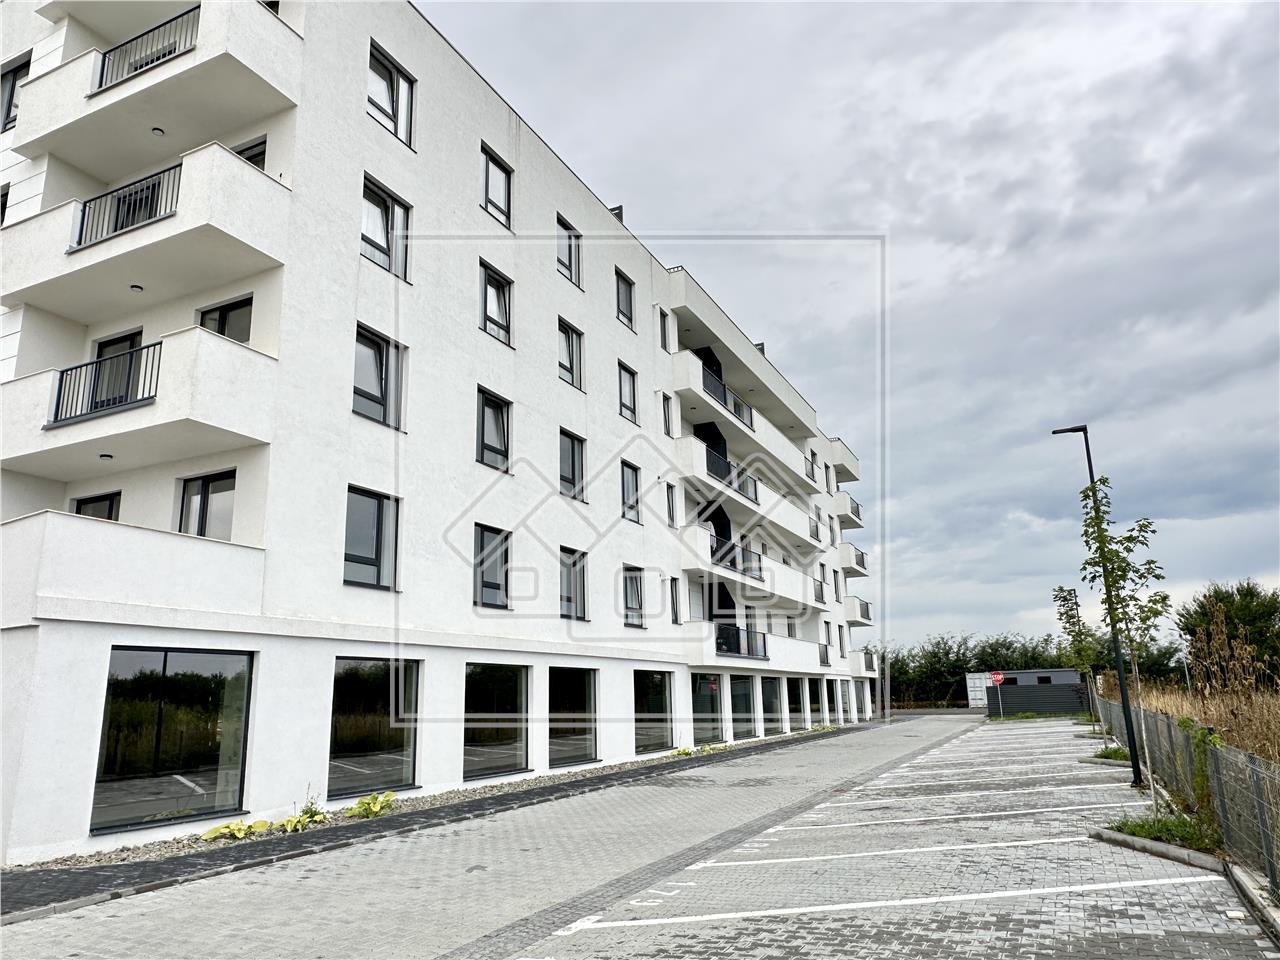 Penthouse for sale in Sibiu -C.Surii Mici - 4 rooms, terrace 144 sqm